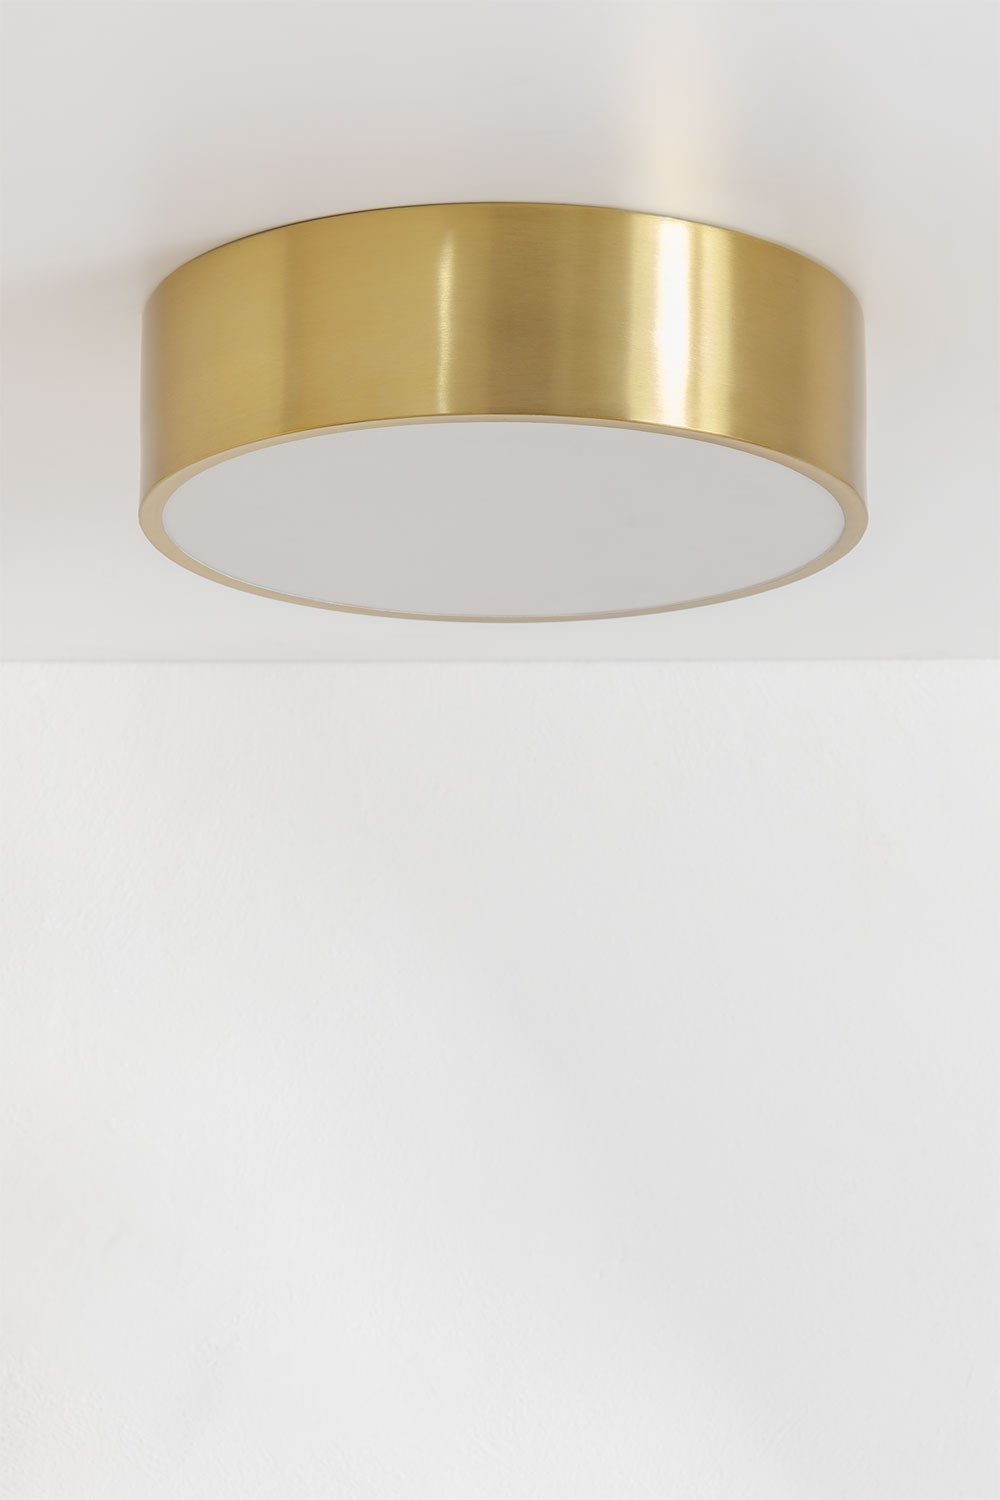 Metalen plafondlamp Volto, galerij beeld 1